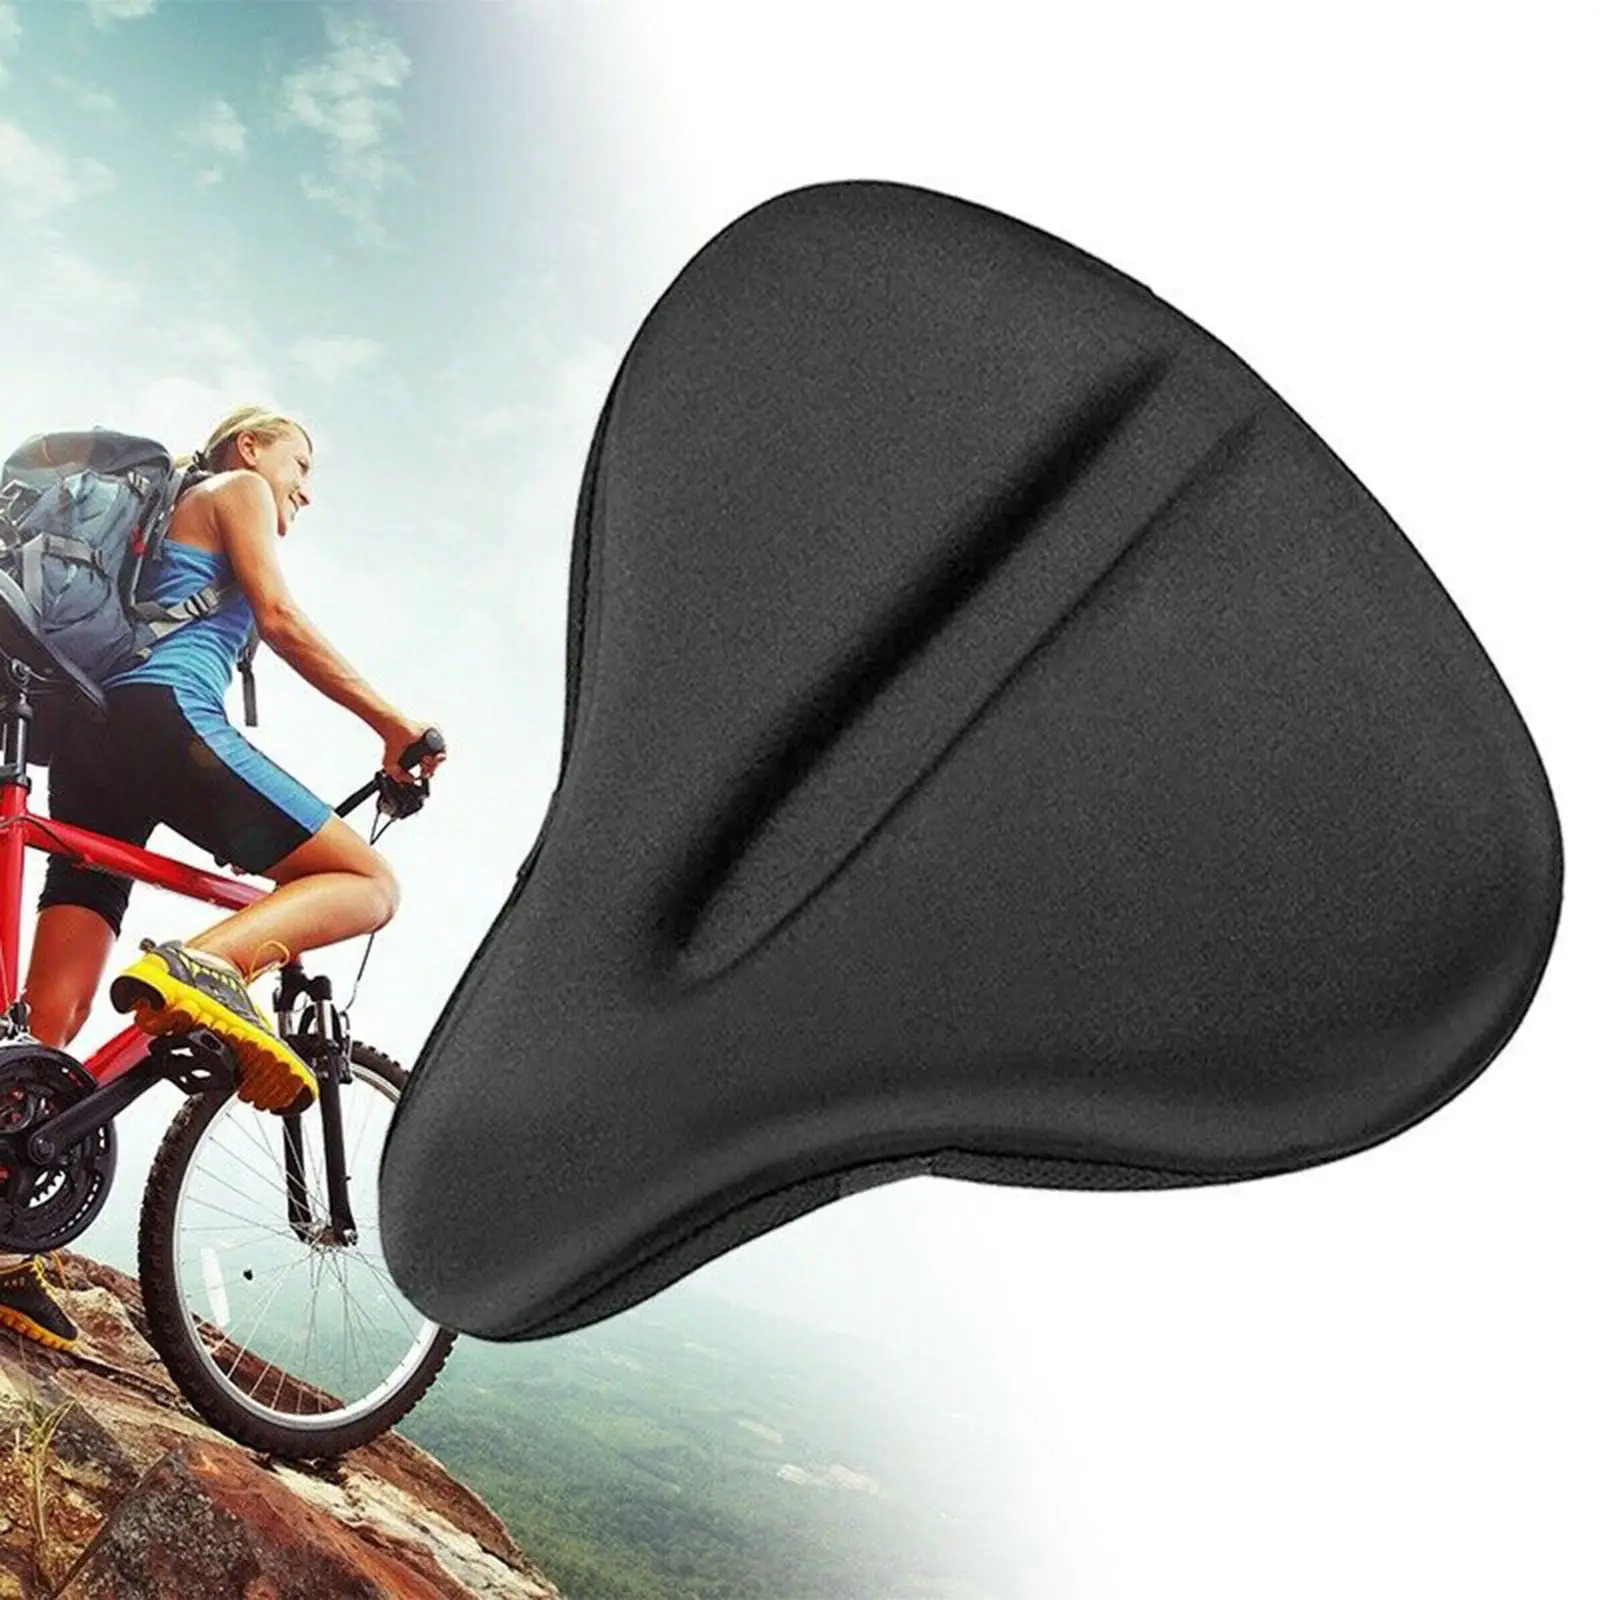 Premium Bike Seat Cover Gel Comfort Cushion Pad for MTB Road   Saddle